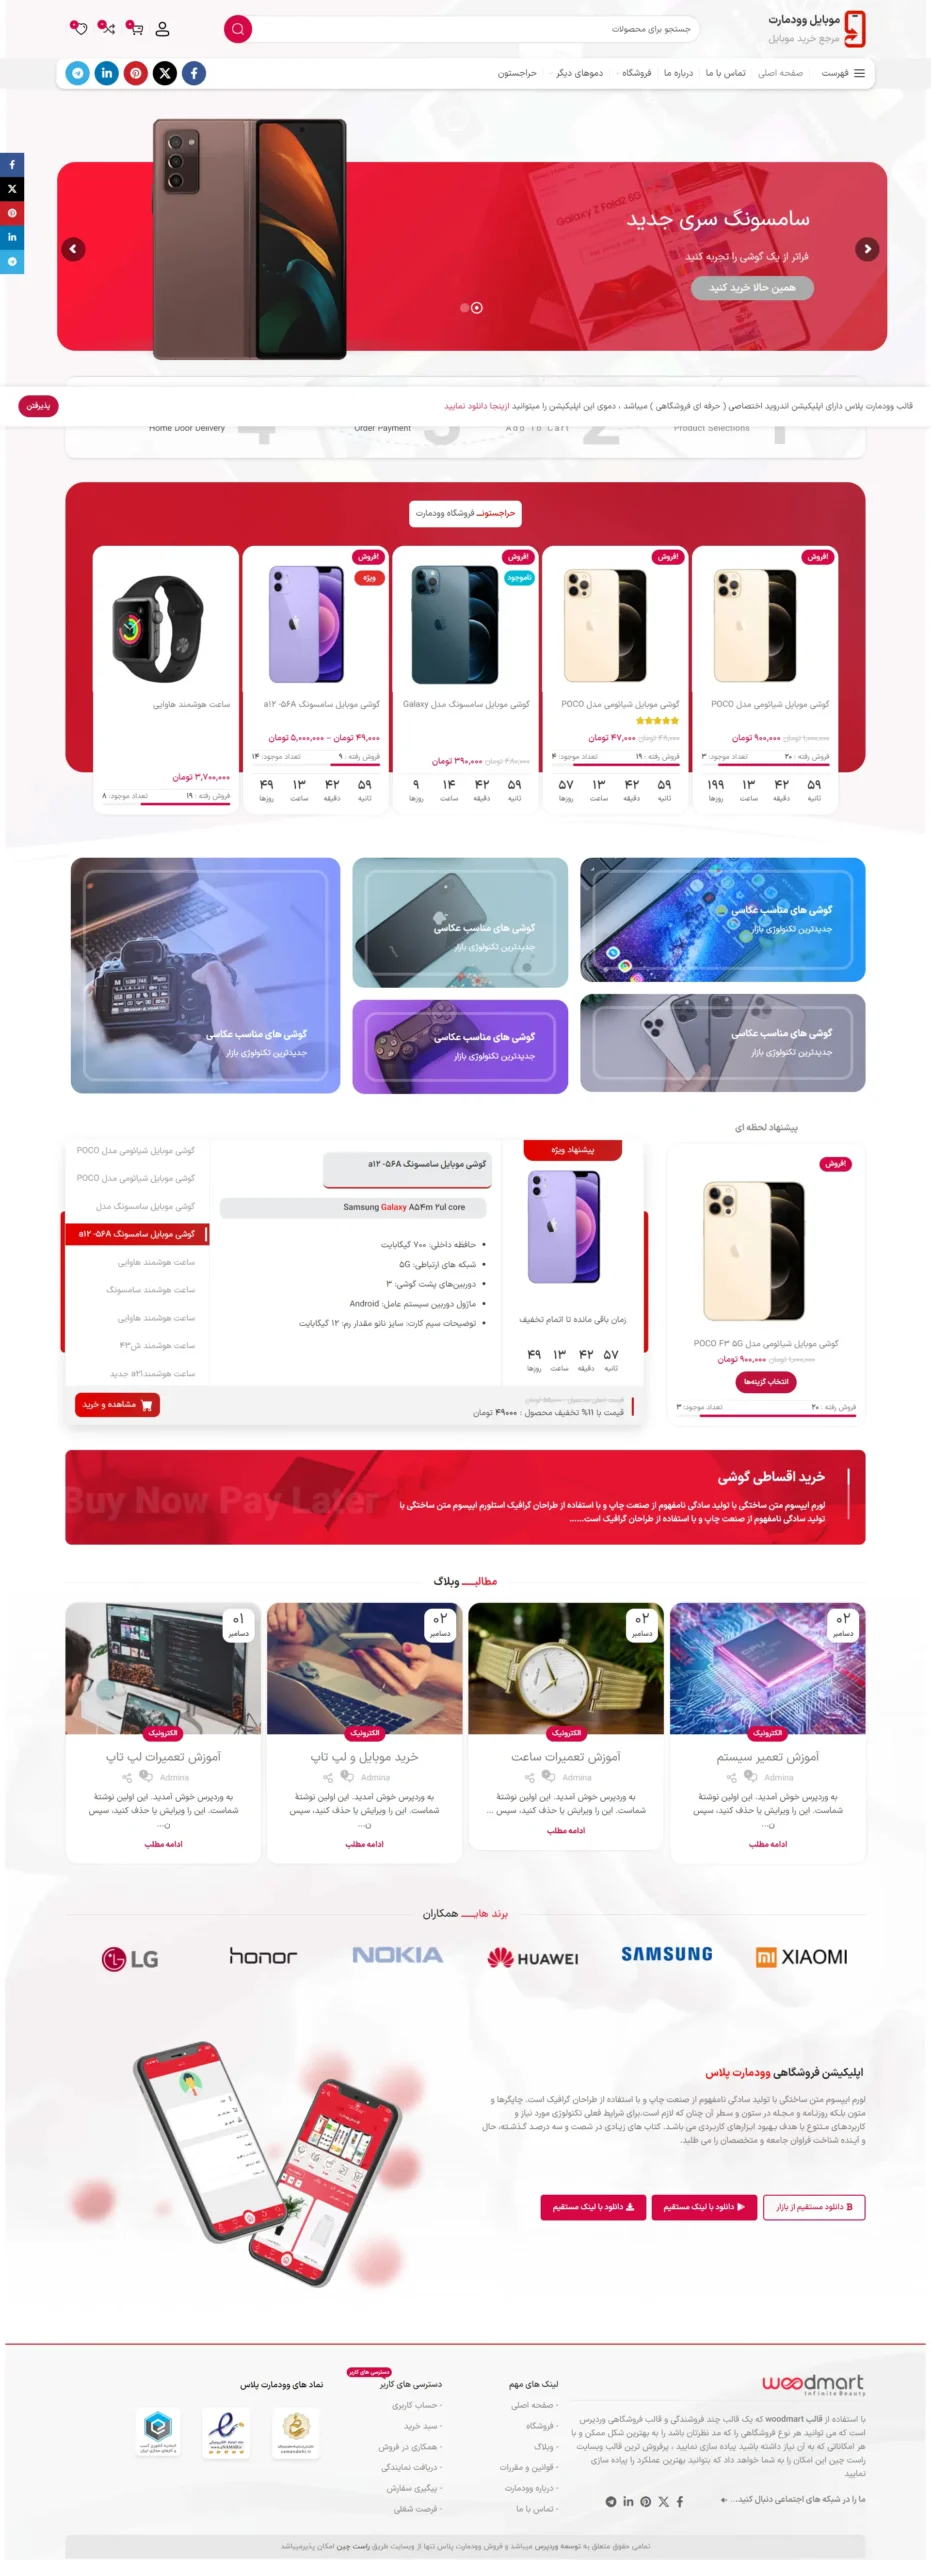 نمونه کار طراحی سایت لوازم جانبی موبایل در اصفهان | هلدینگ نکست